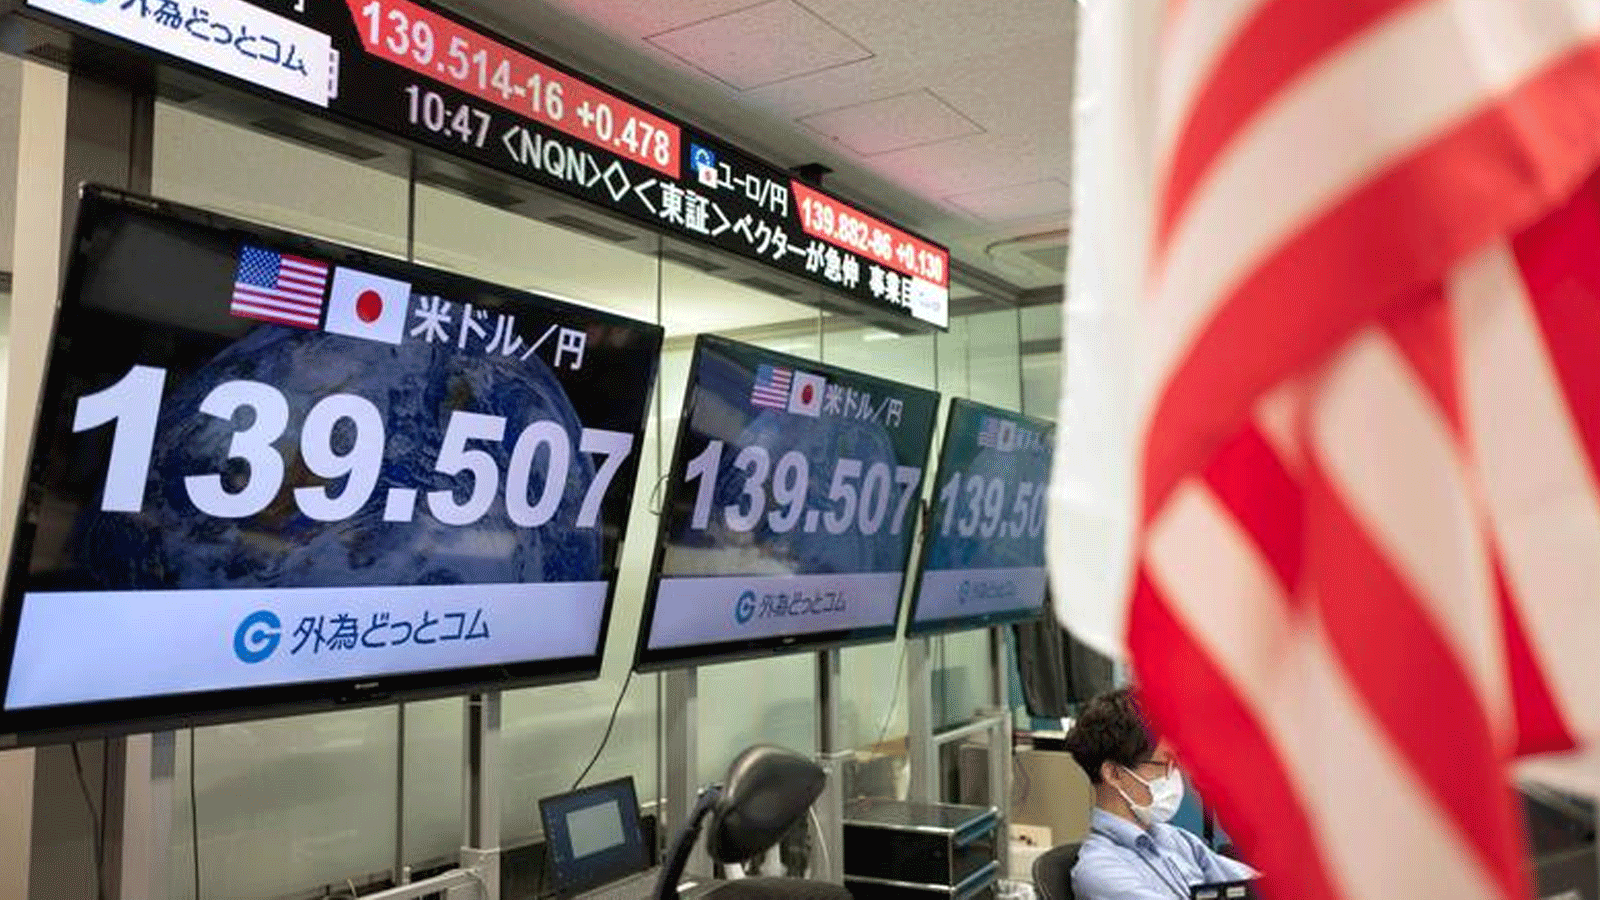  لوحات الأسعار الإلكترونية تعرض سعر الين مقابل الدولار الأميركي في إحدى وساطة الصرف الأجنبي في طوكيو. 1 أيلول\سبتمبر 2022. 